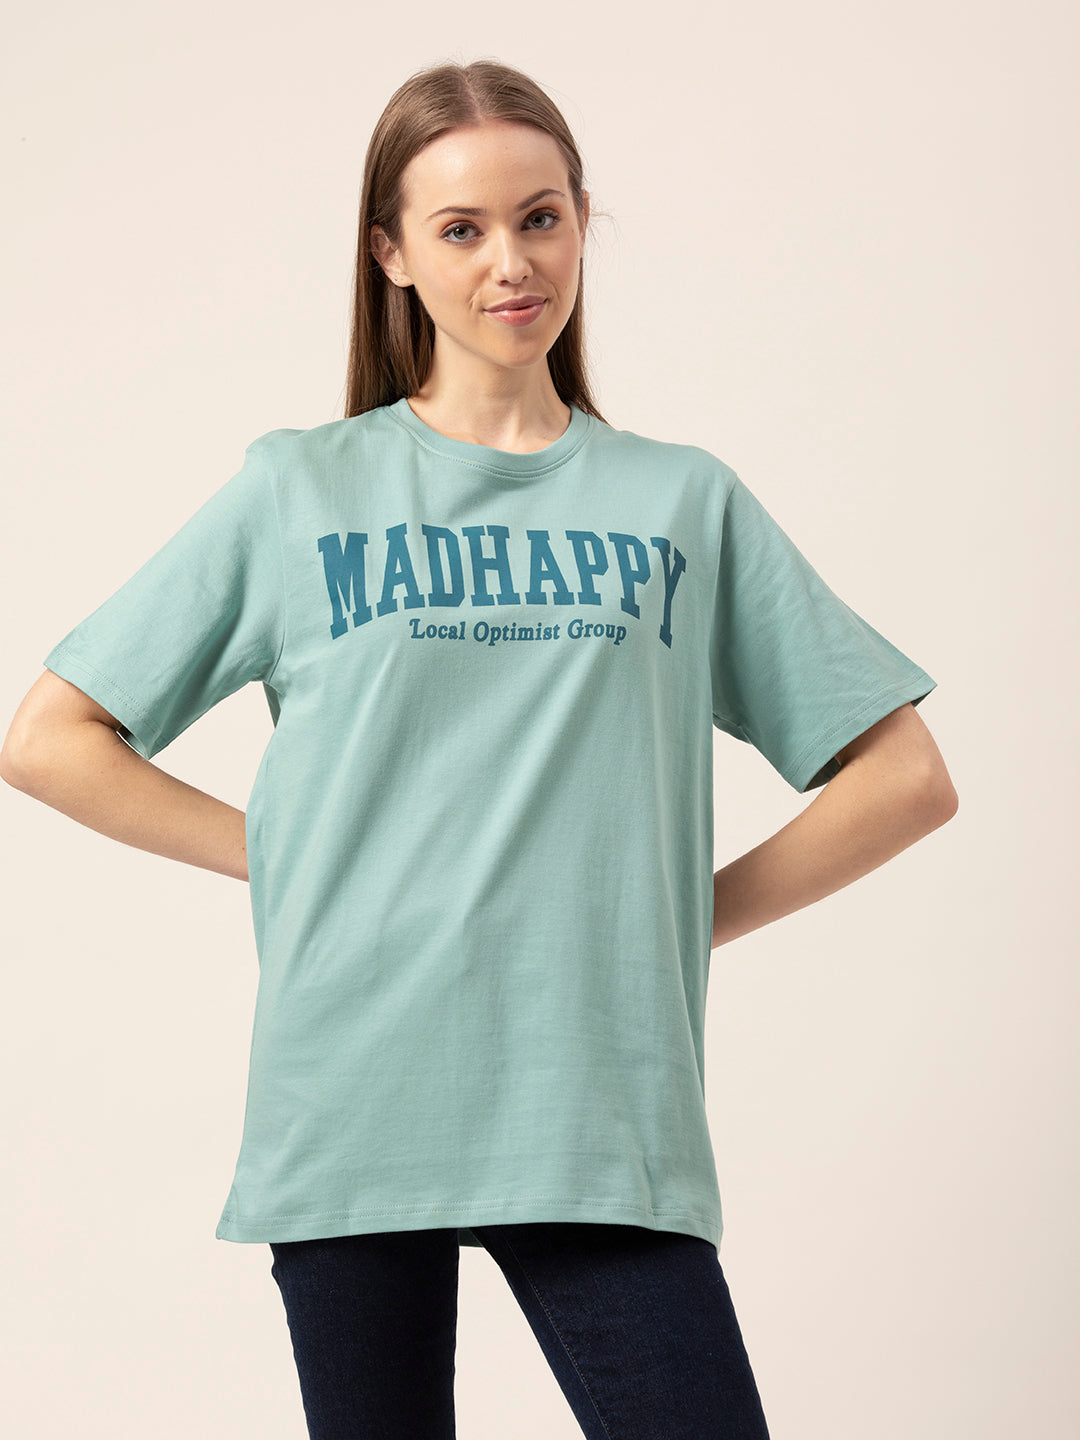 Madhappy Women's Oversized T-Shirt